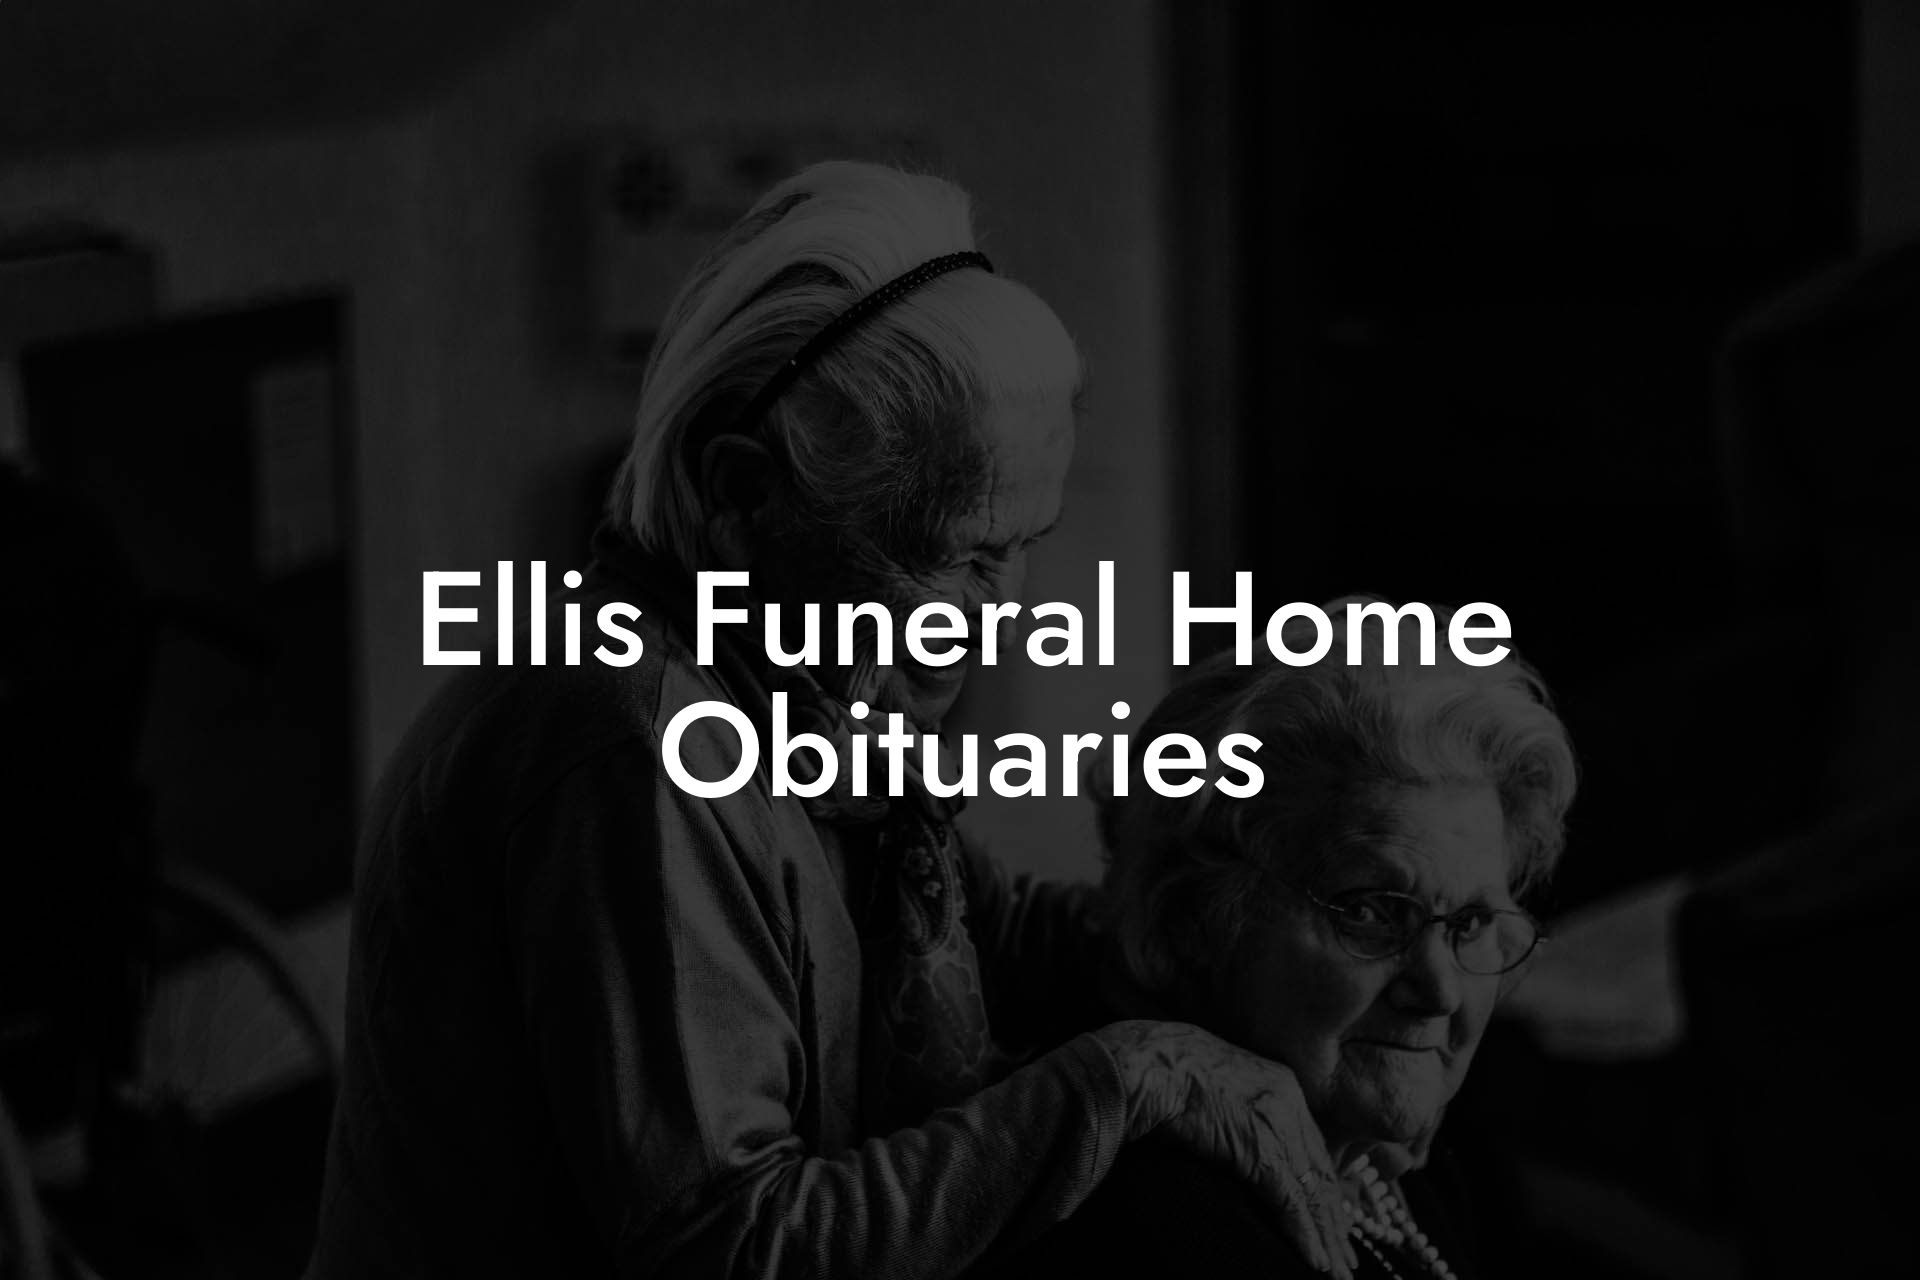 Ellis Funeral Home Obituaries